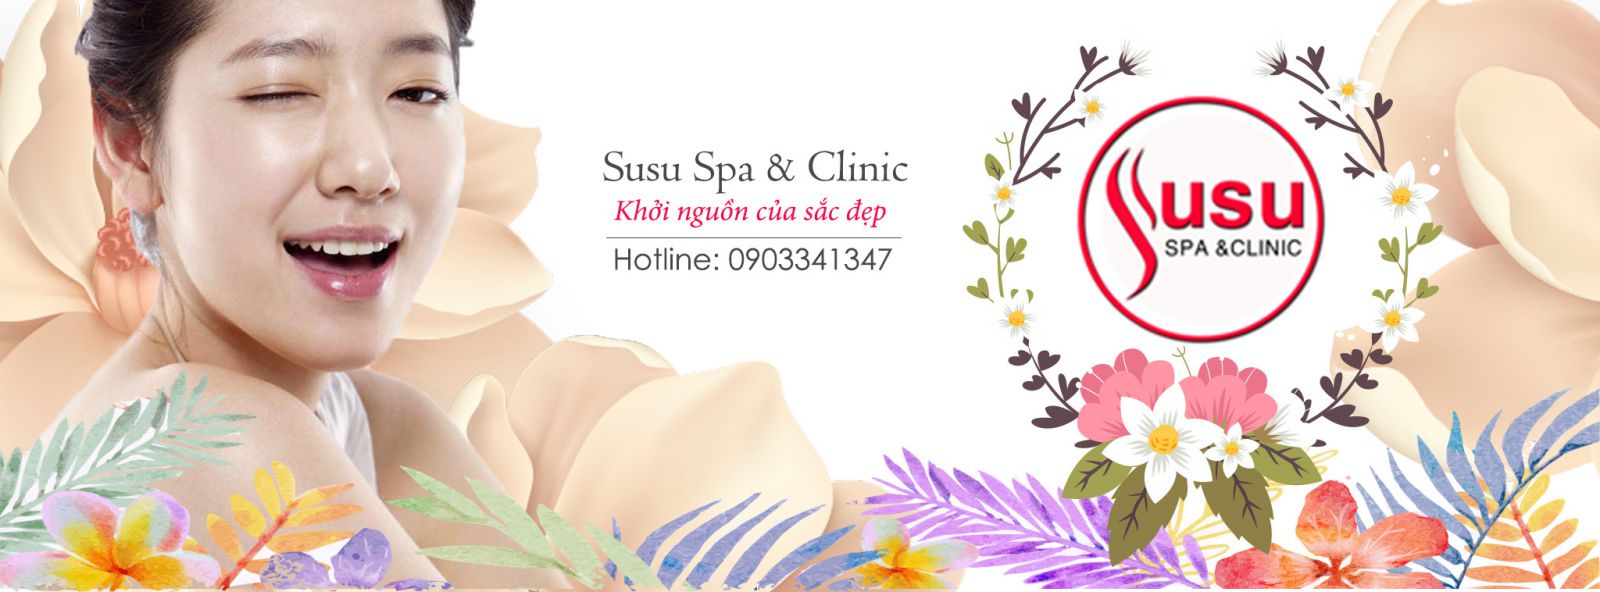 Susu Spa & Clinic 